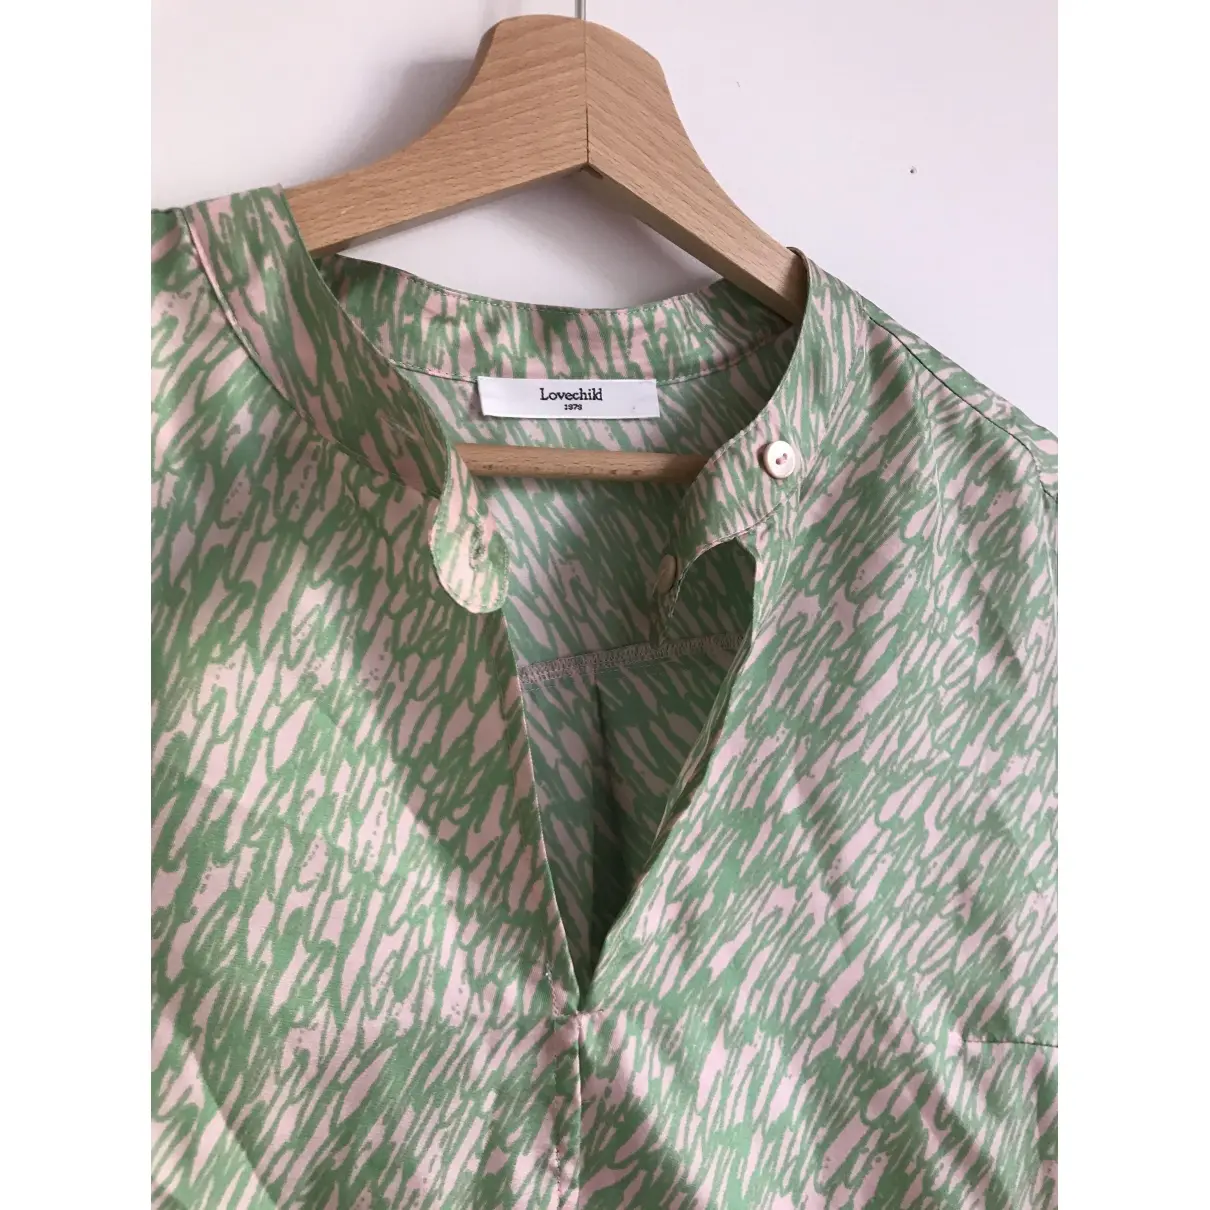 Buy Lovechild 1979 Silk blouse online